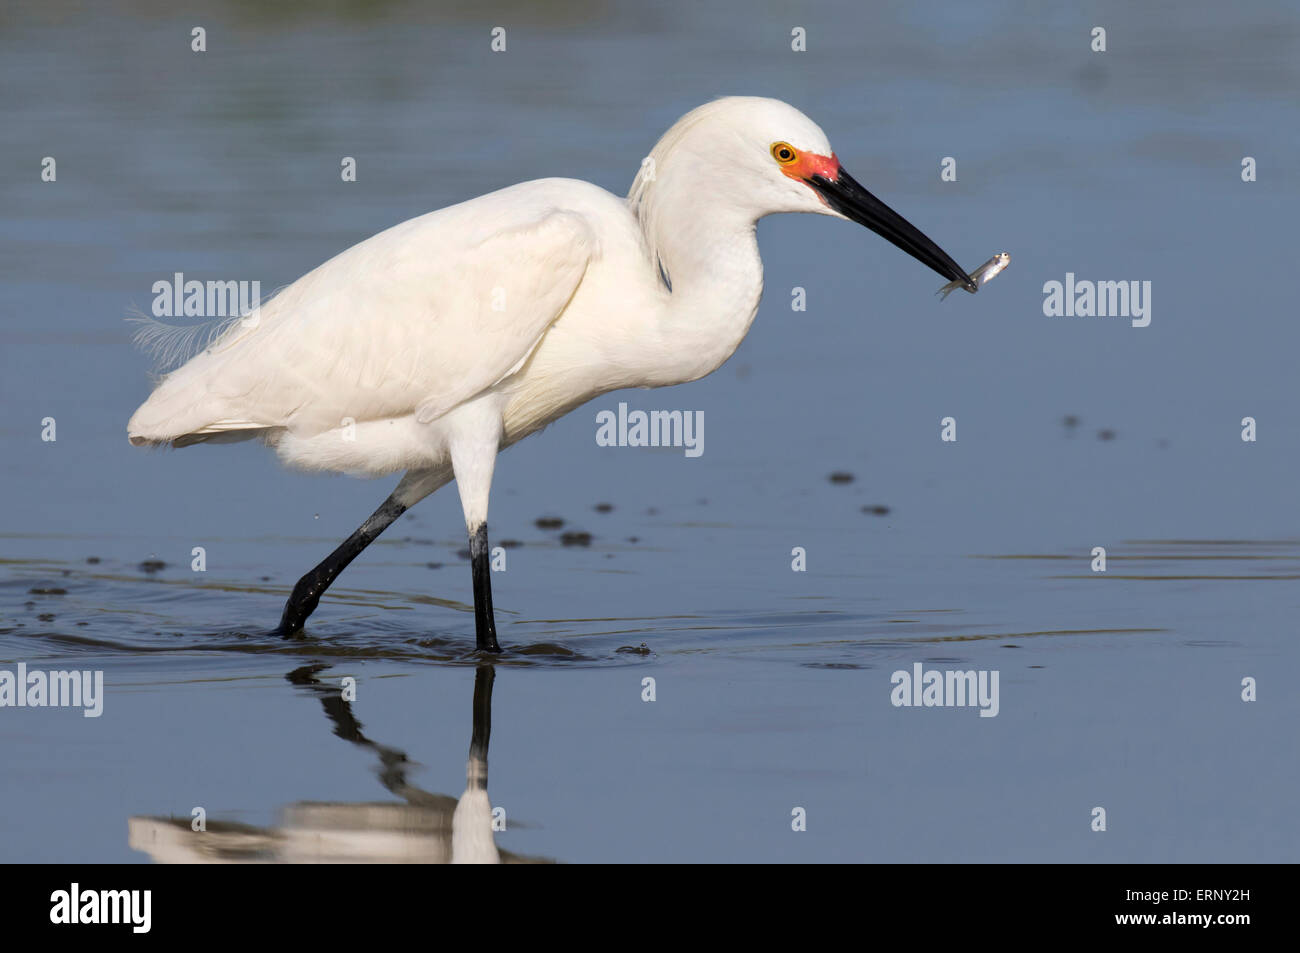 Snowy egret (Egretta thula) fishing in tidal marsh, Galveston, Texas, USA. Stock Photo